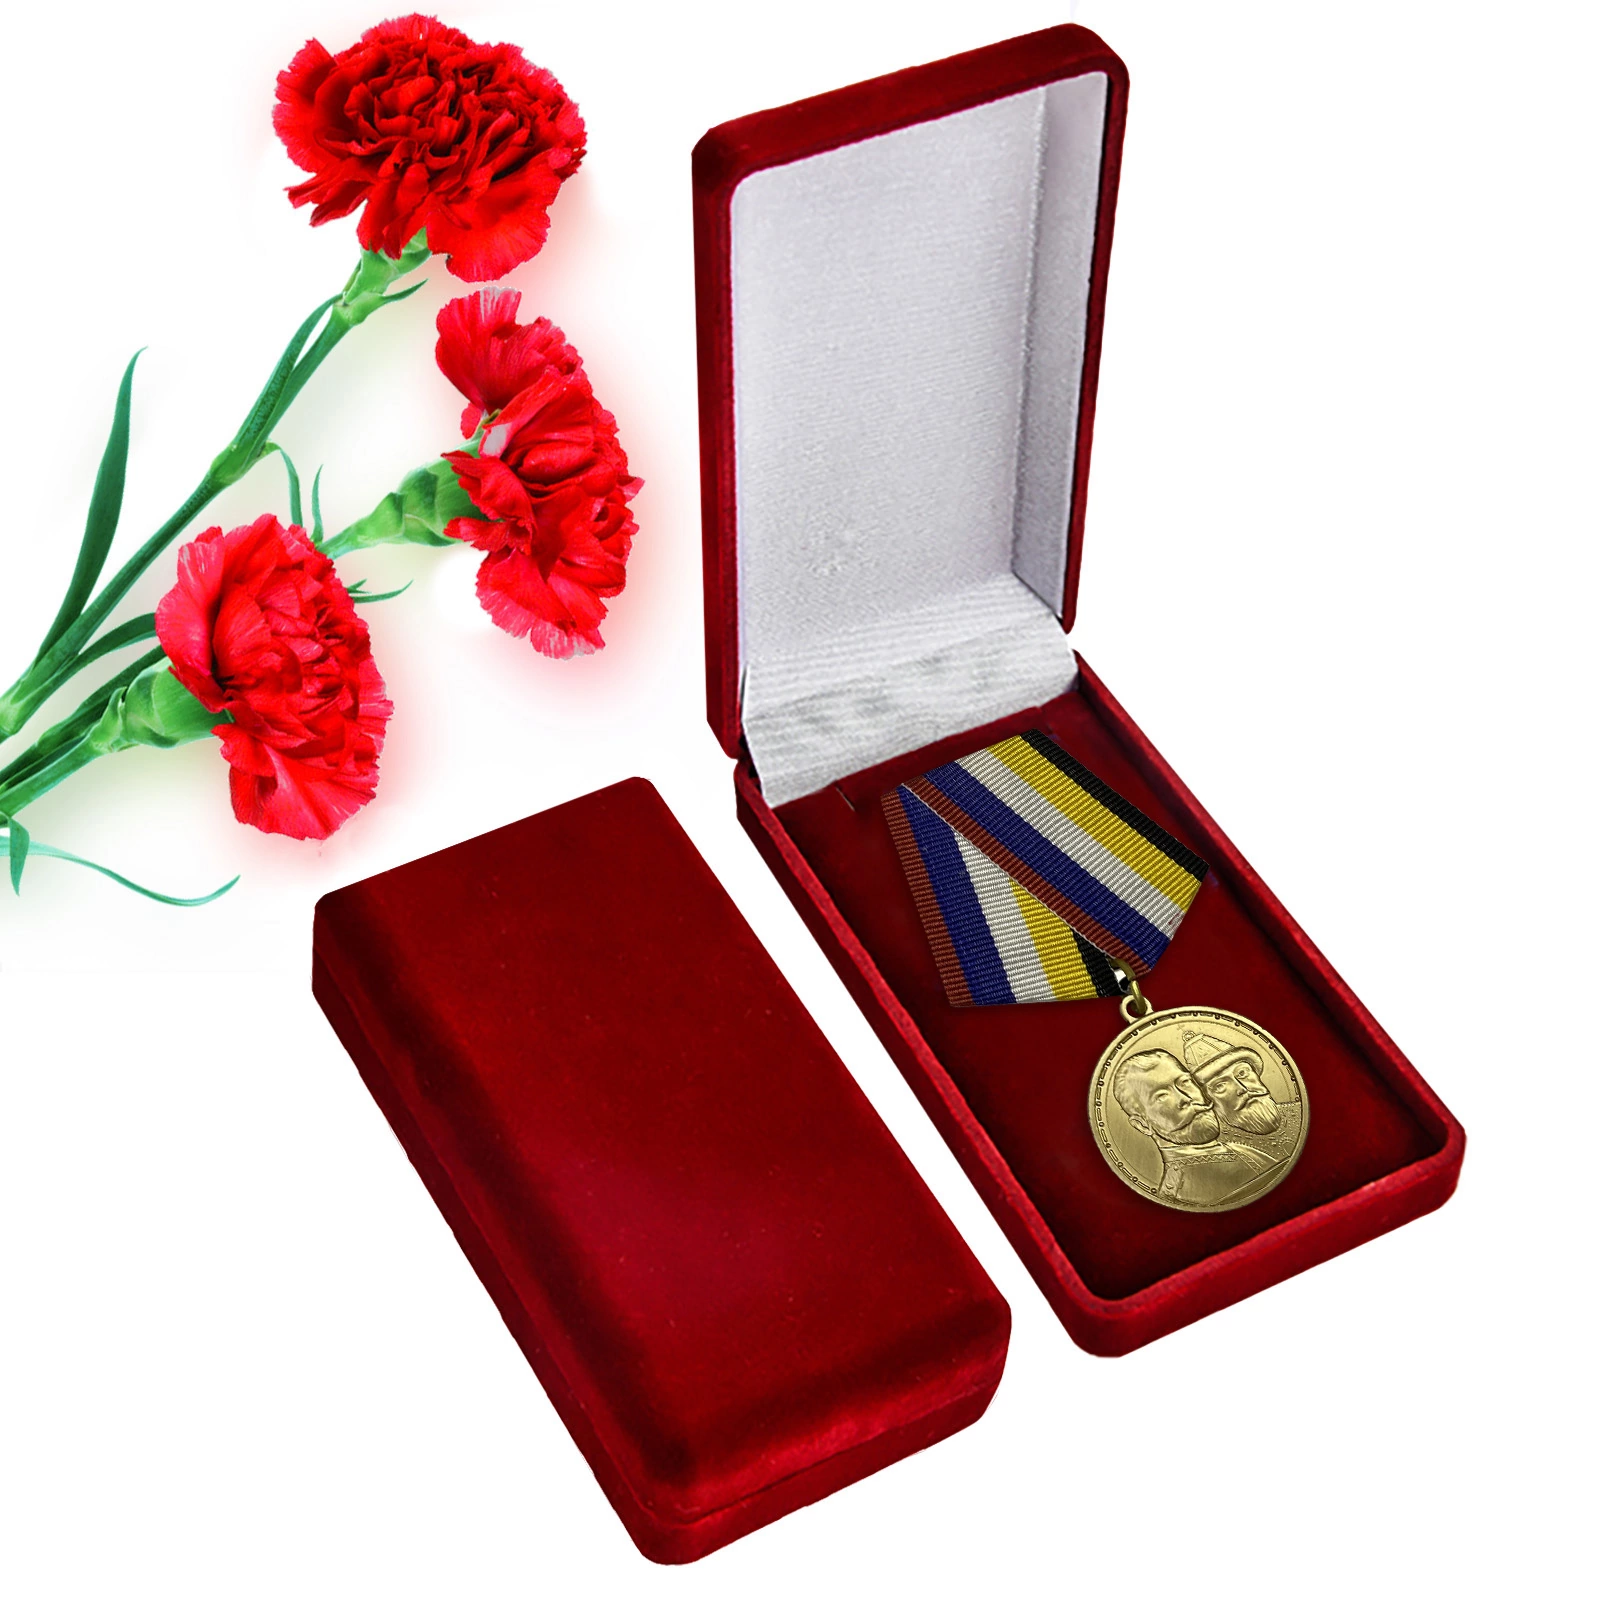 Памятная медаль "400 лет Дому Романовых"